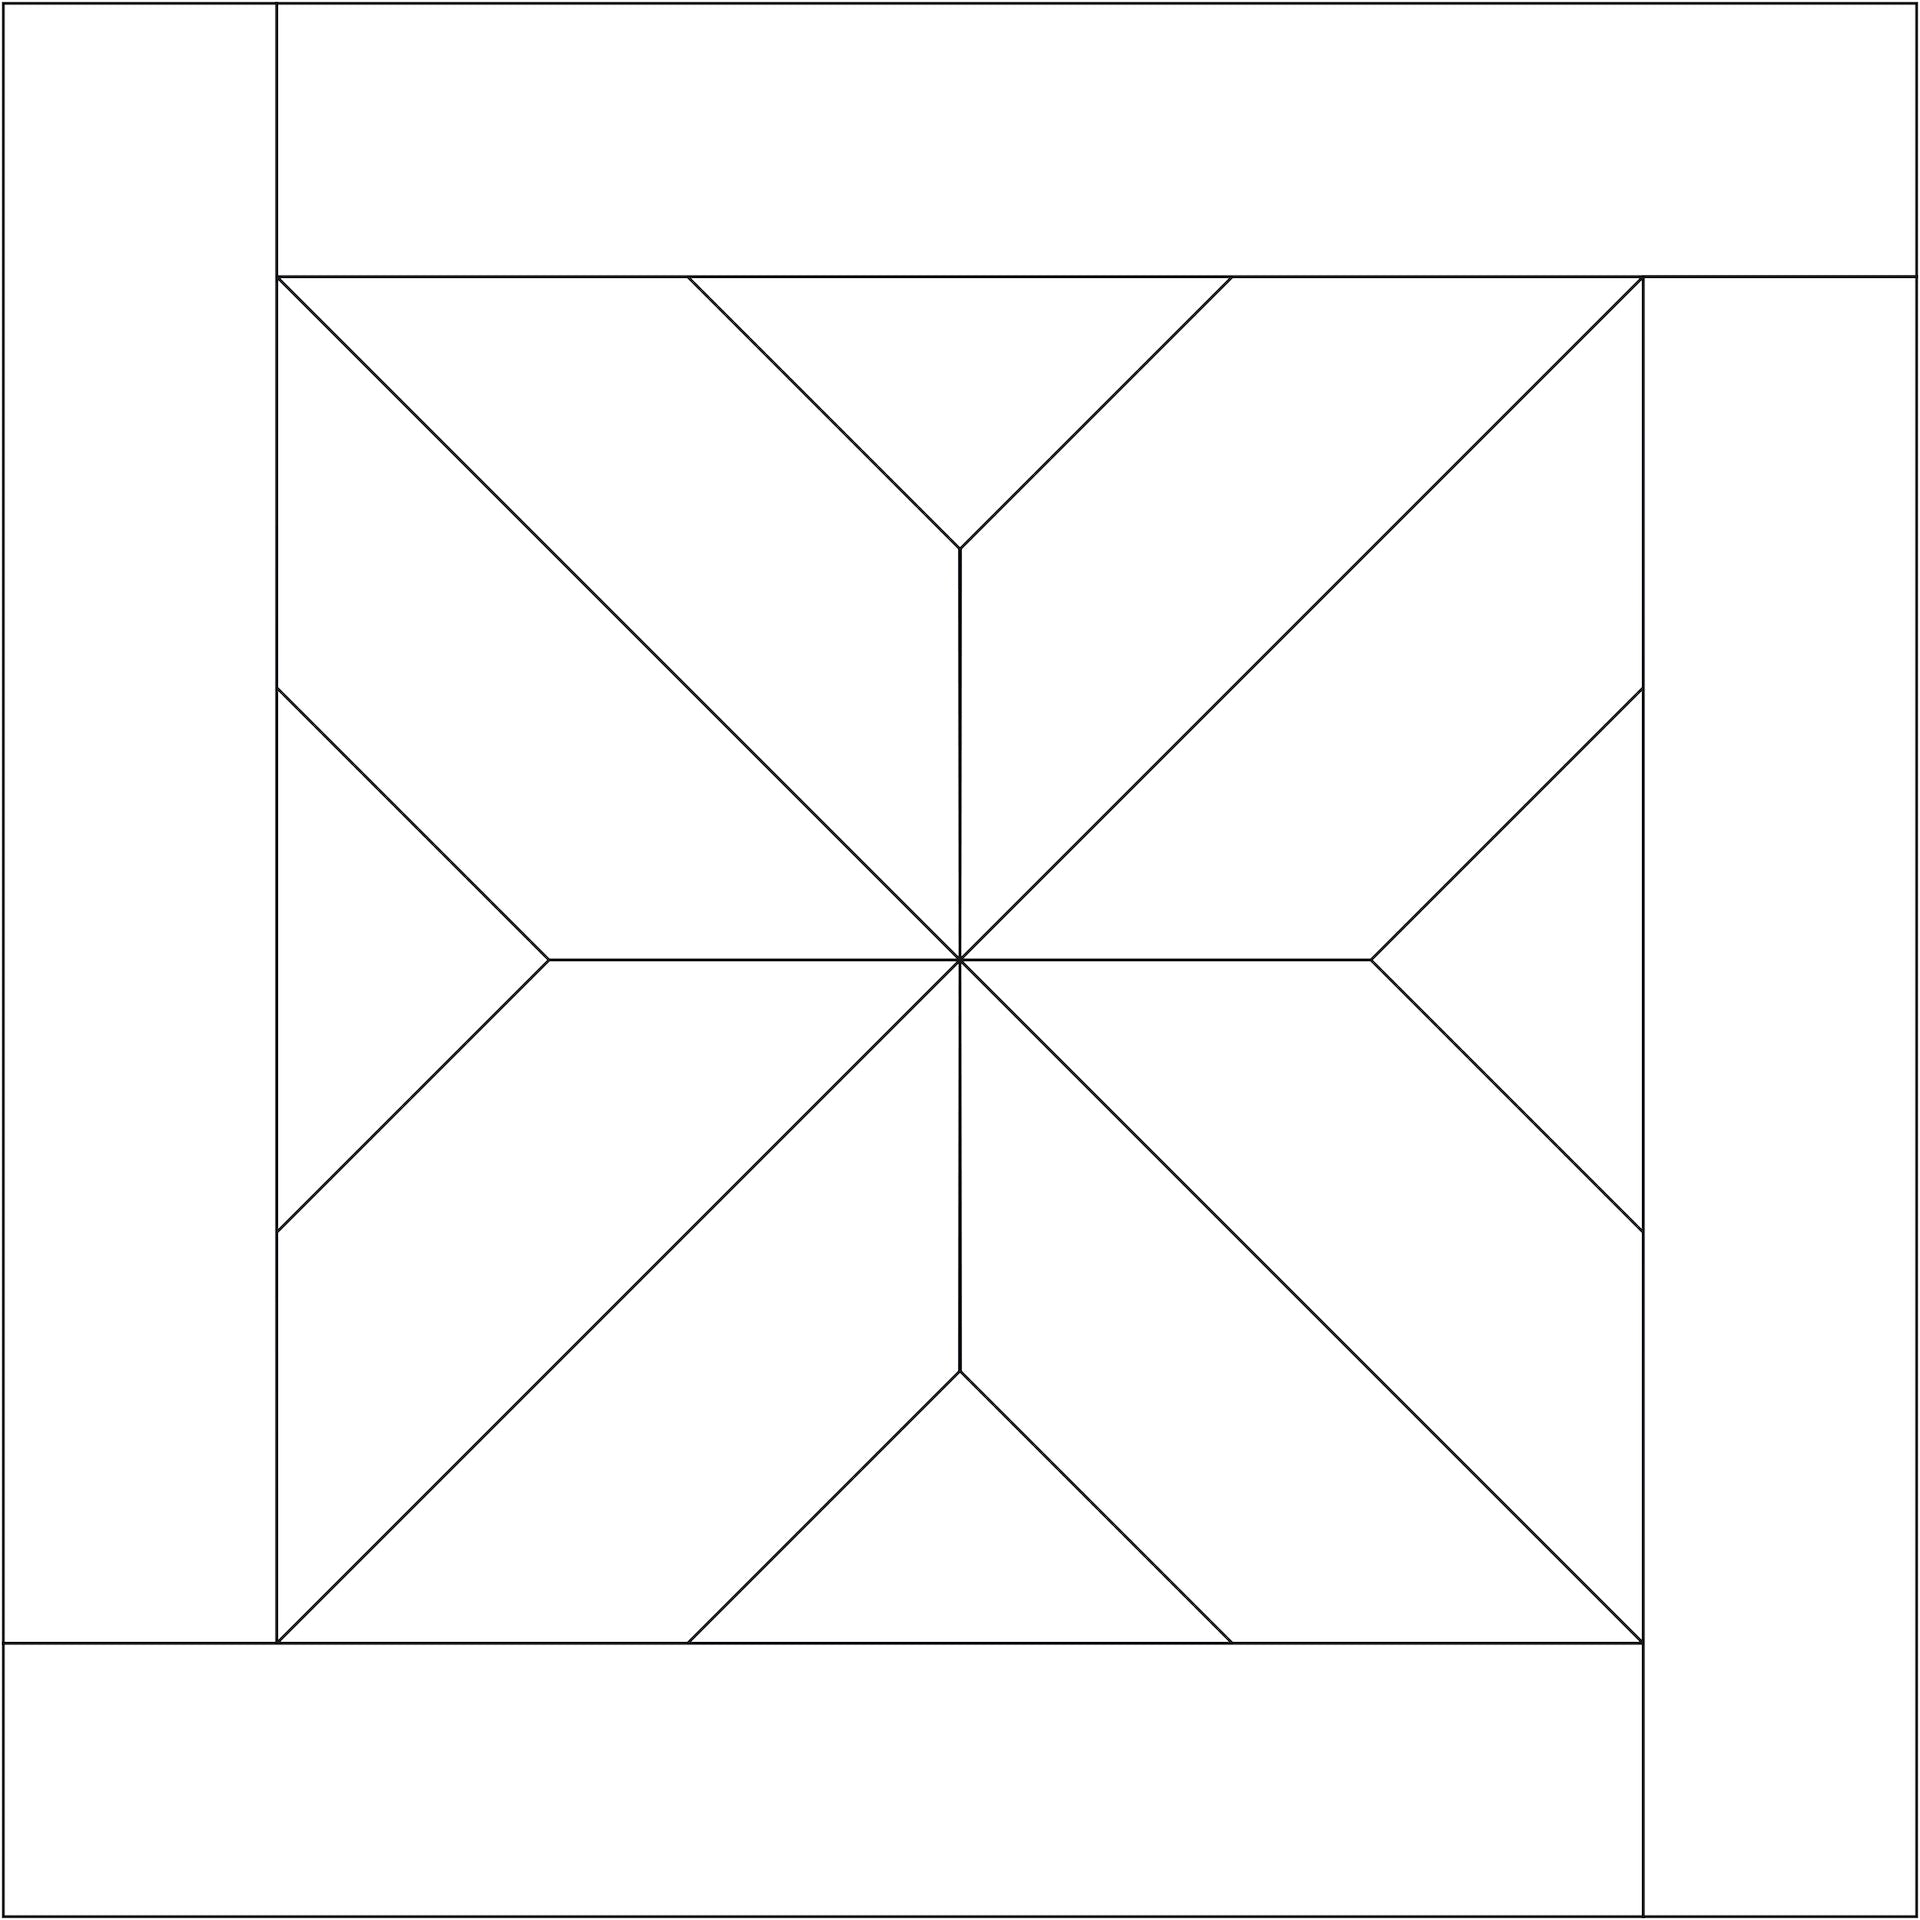 Het Chene patroon is een X vormig patroon